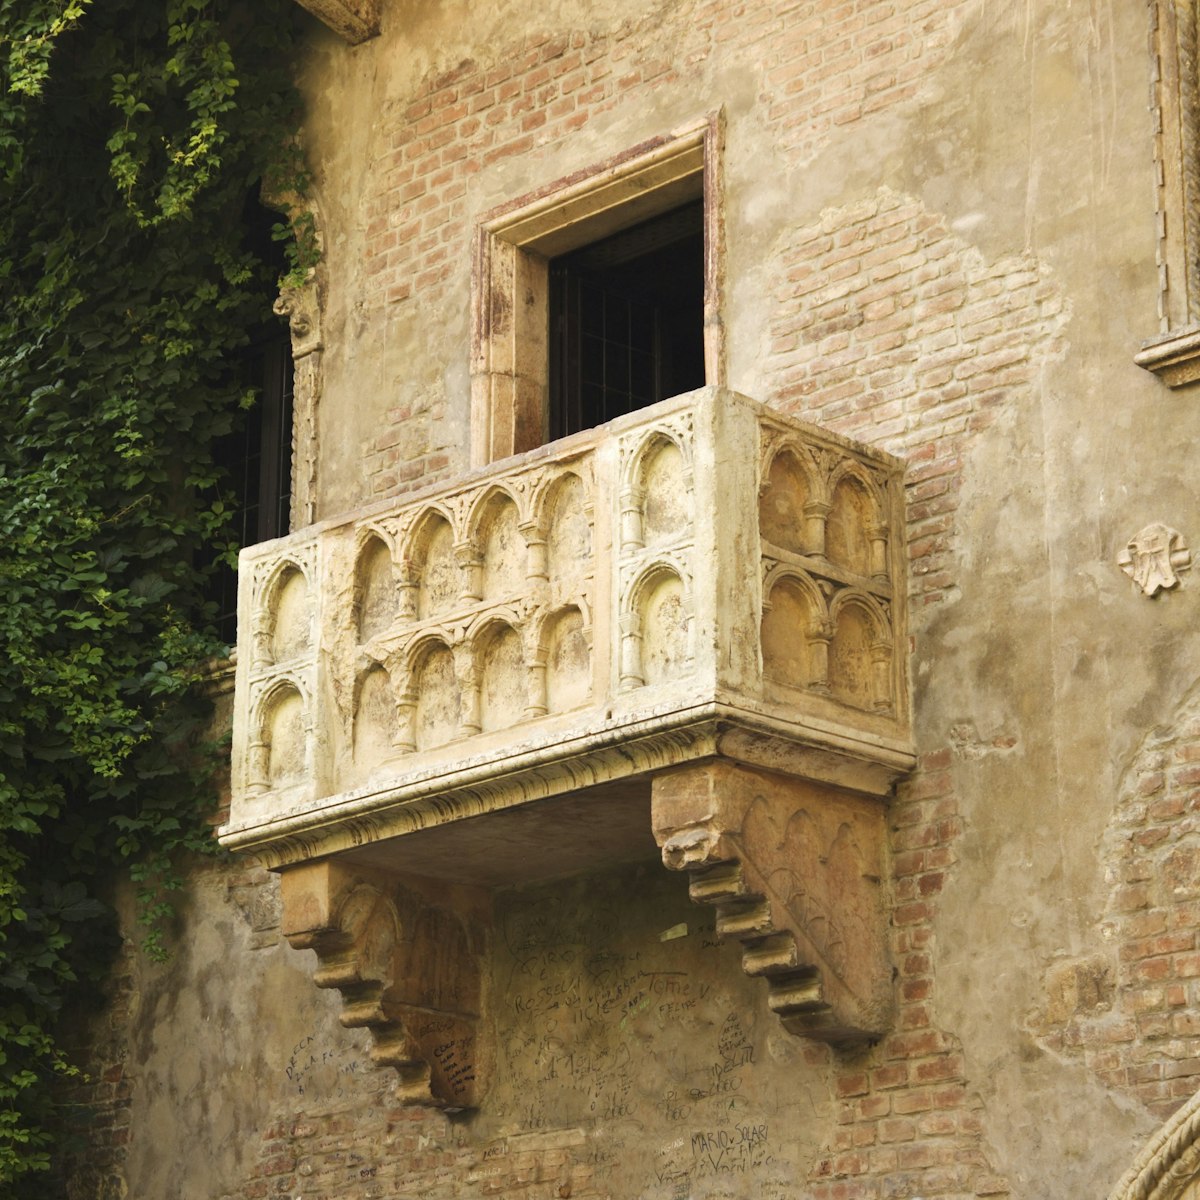 Juliets Balcony, Verona, Veneto, Italy